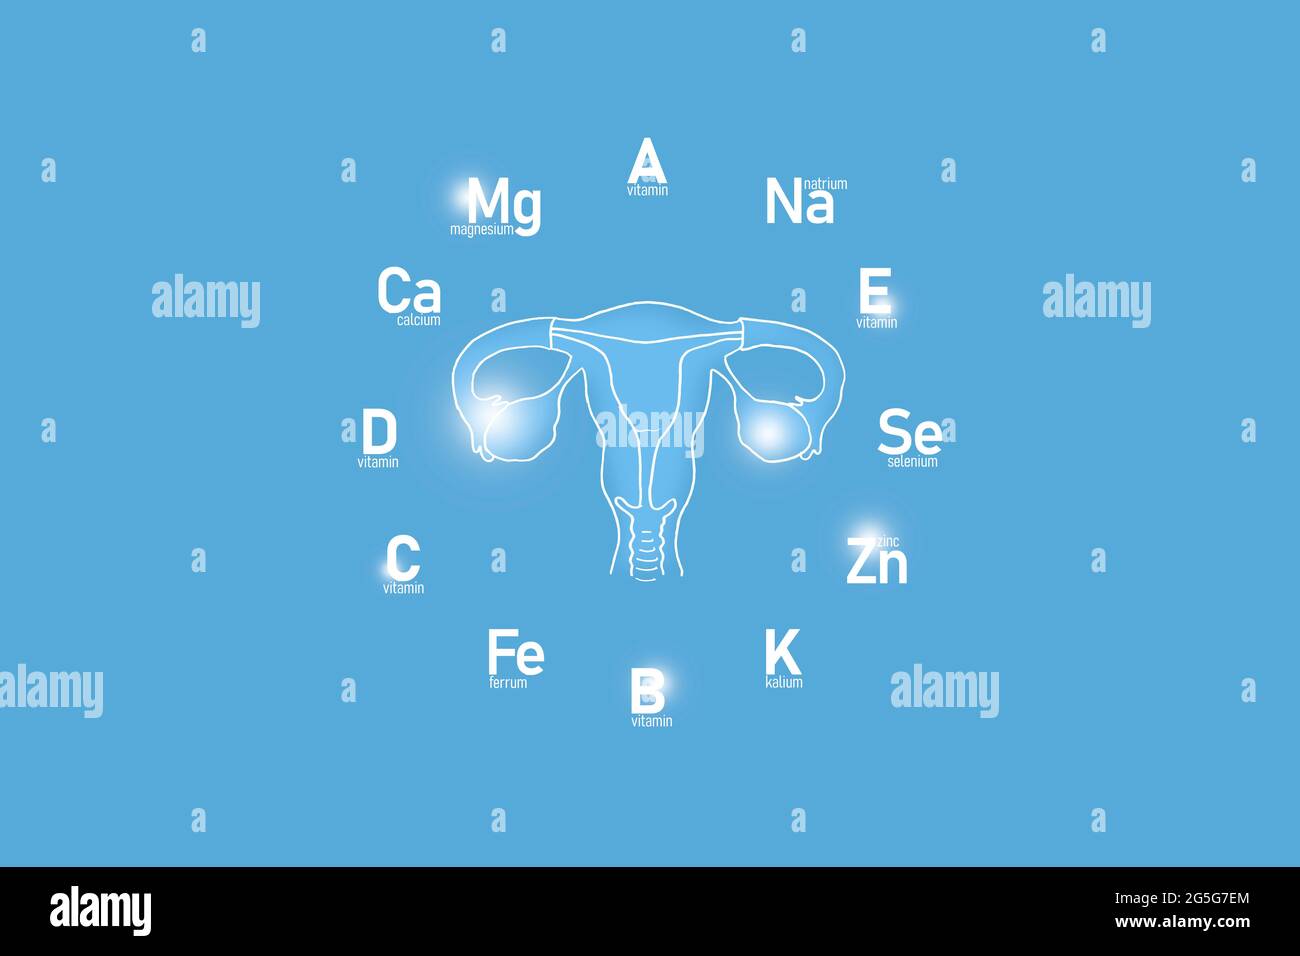 Orologio stilizzato con vitamine essenziali e microelementi per la salute umana, utero disegnato a mano, fondo azzurro. Foto Stock